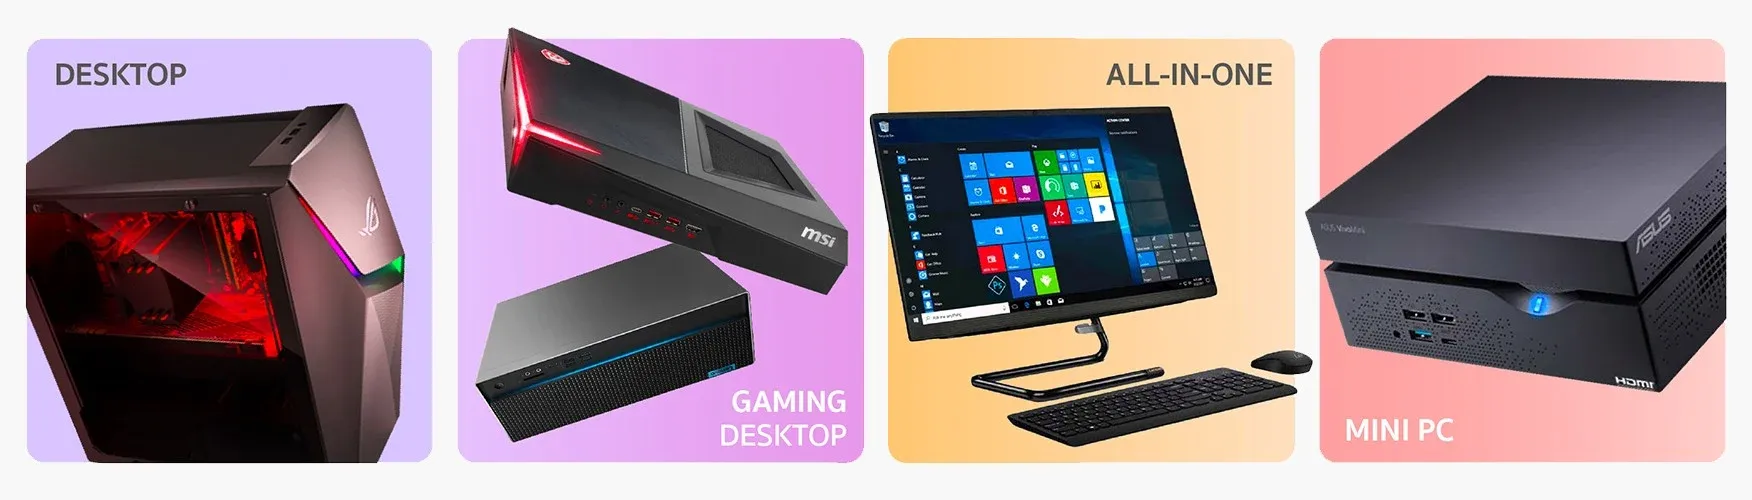 คอมพิวเตอร์ใหม่-Desktop-Gaming-Desktop-All-in-One-Mini-PC-ที่ใช้ระบบปฏิบัติการ Windows มักจะมีชื่อเริ่มต้นที่ได้มาจากผู้ขาย